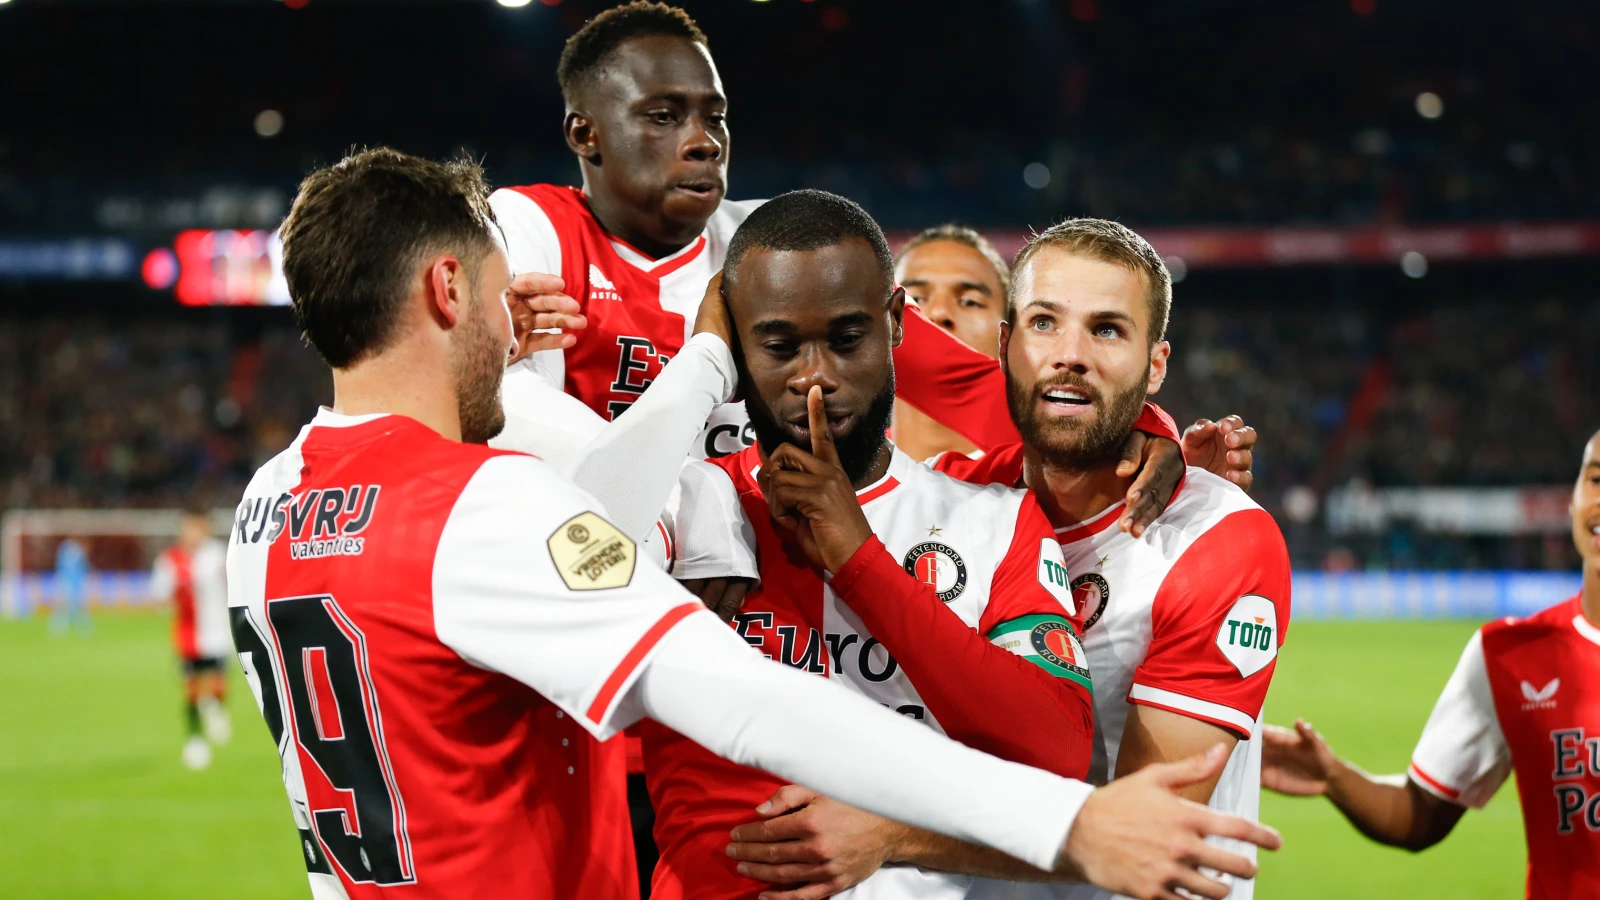 SAMENVATTING | Feyenoord - Vitesse 4-0